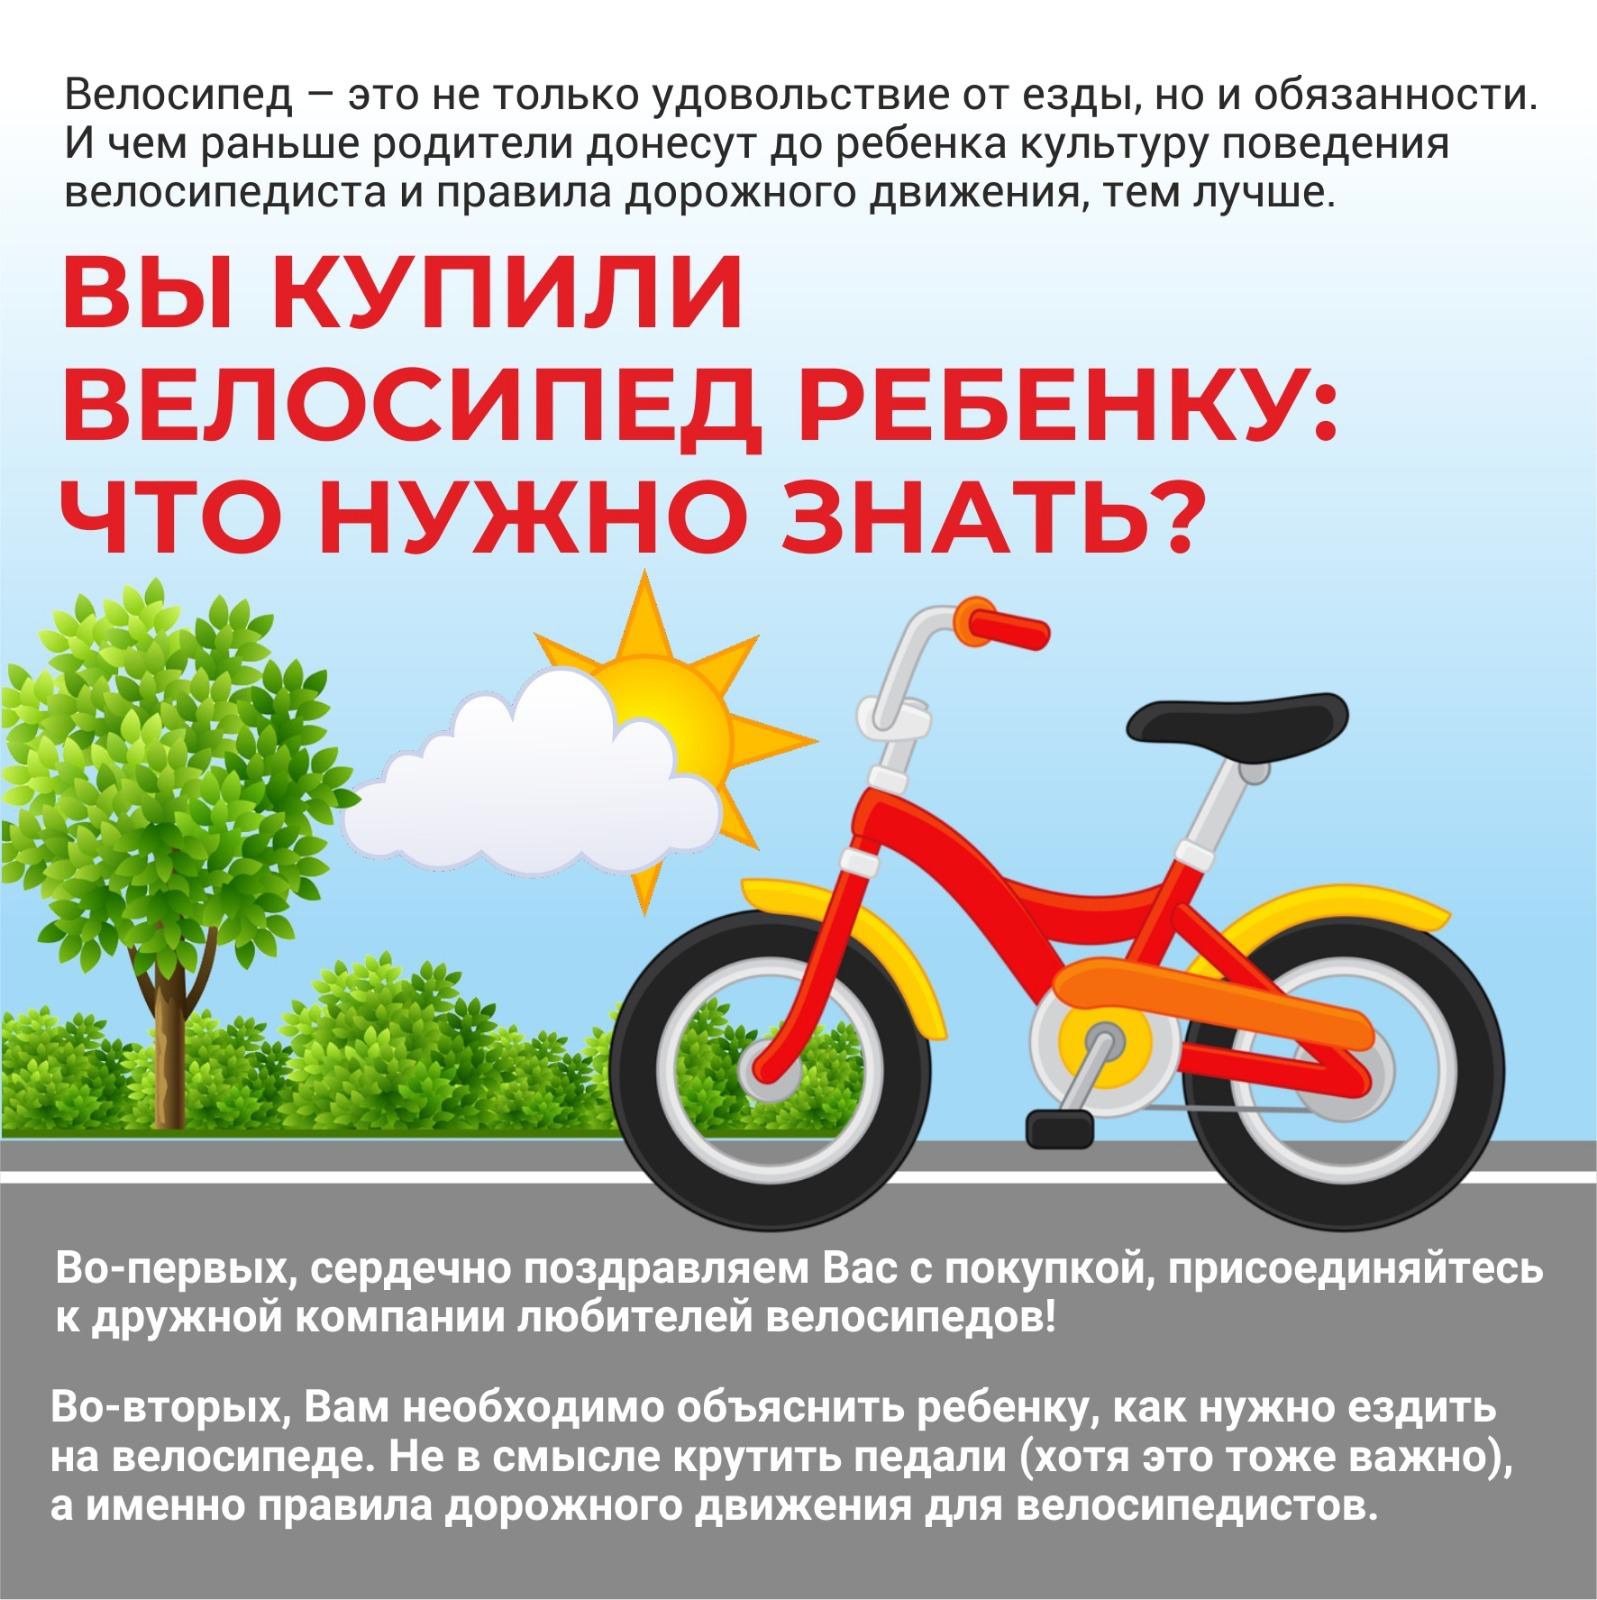 Правила безопасной езды на велосипеде.